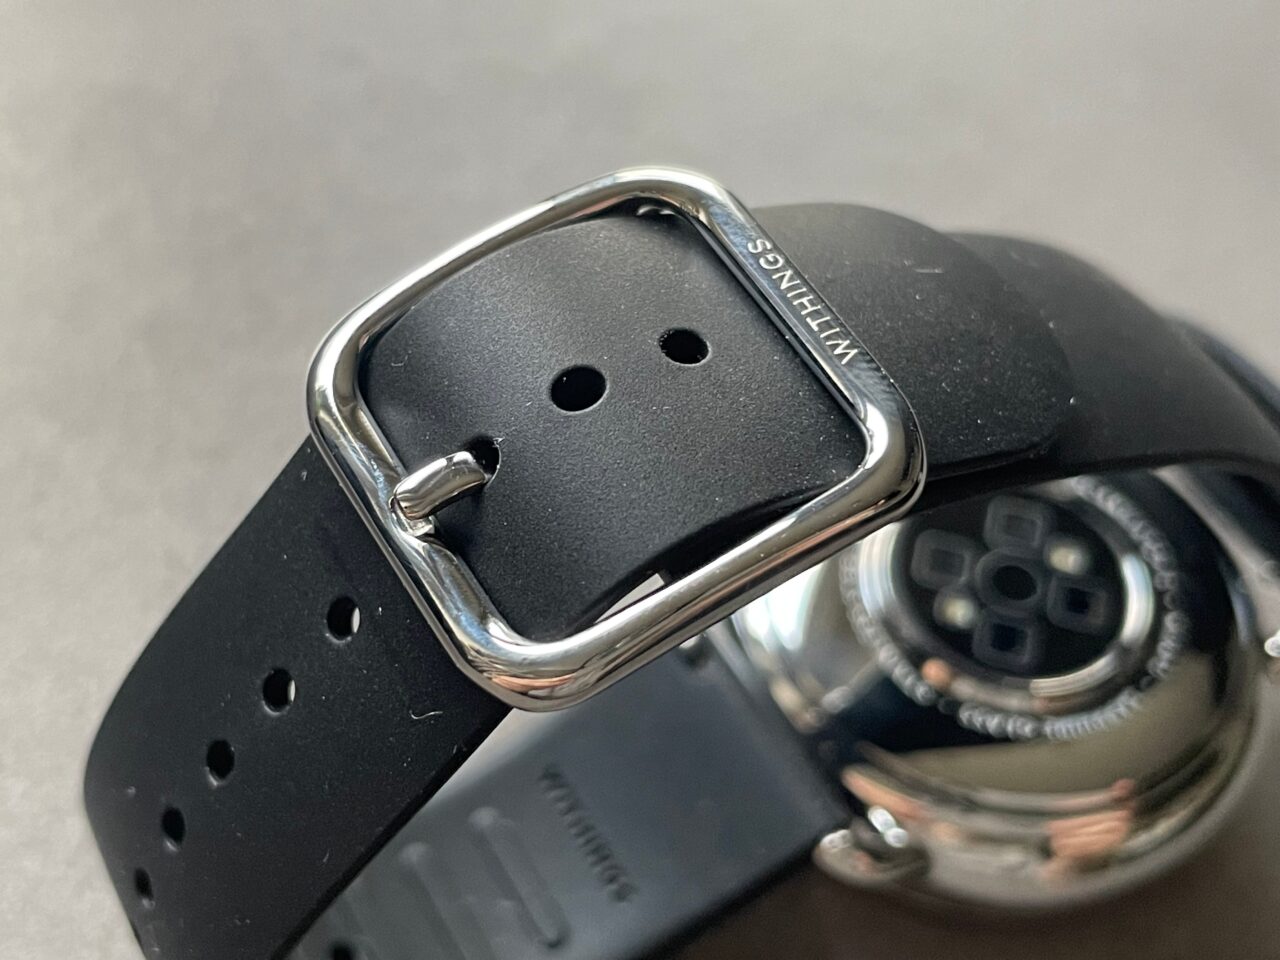 Czarny gumowy pasek do smartwatcha z metalową klamrą, w tle widoczna odwrotna strona innego smartwatcha.